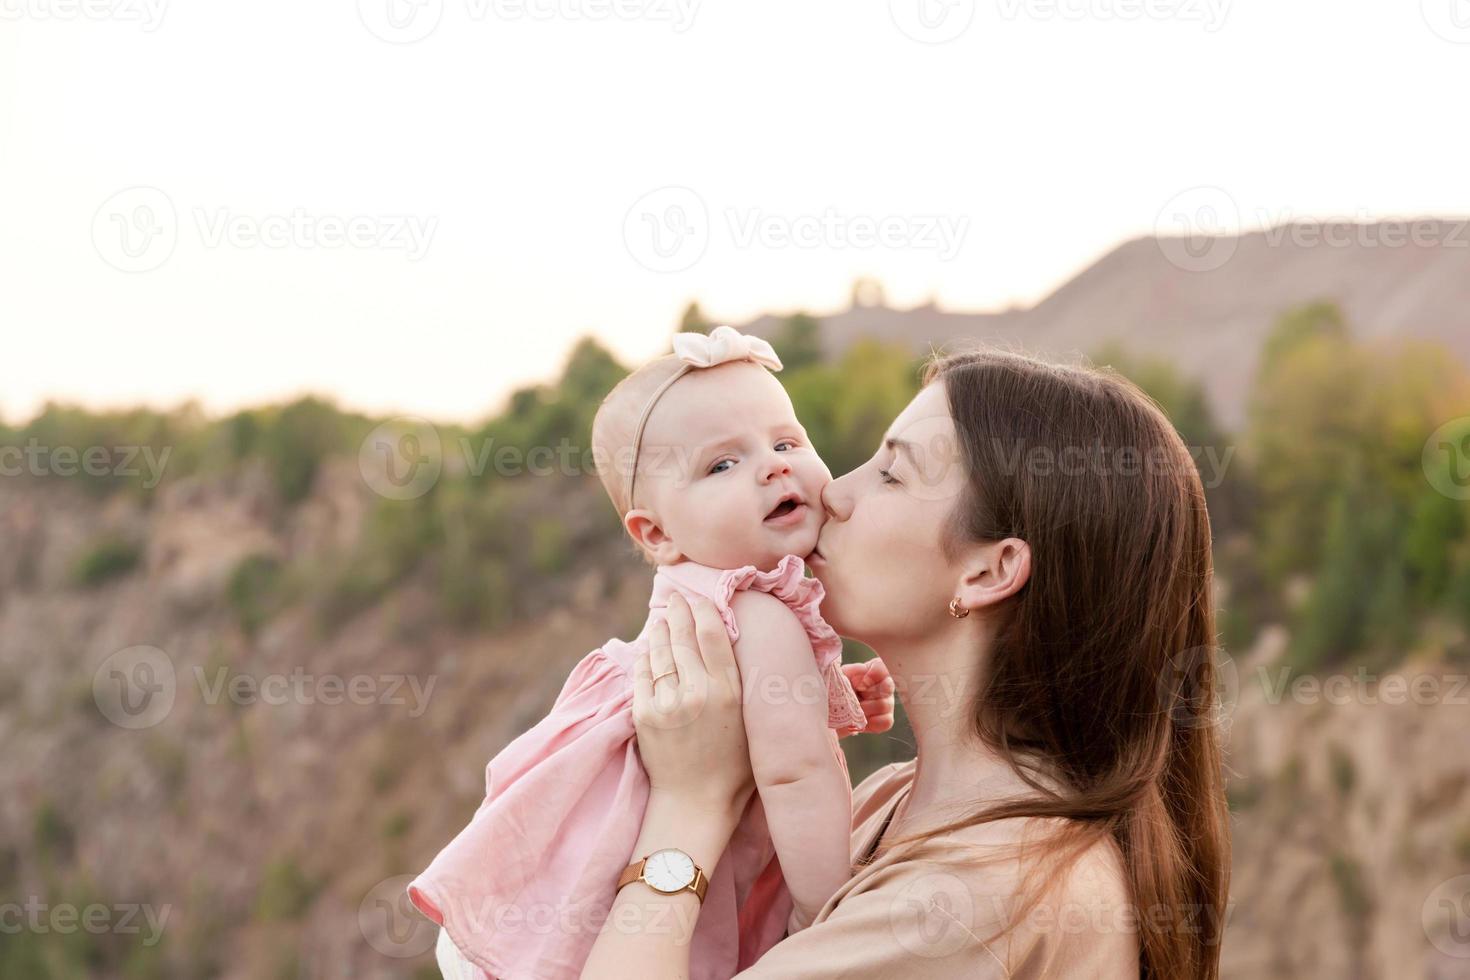 la mamma tiene in braccio un bambino e lo bacia delicatamente sulla guancia all'aperto foto